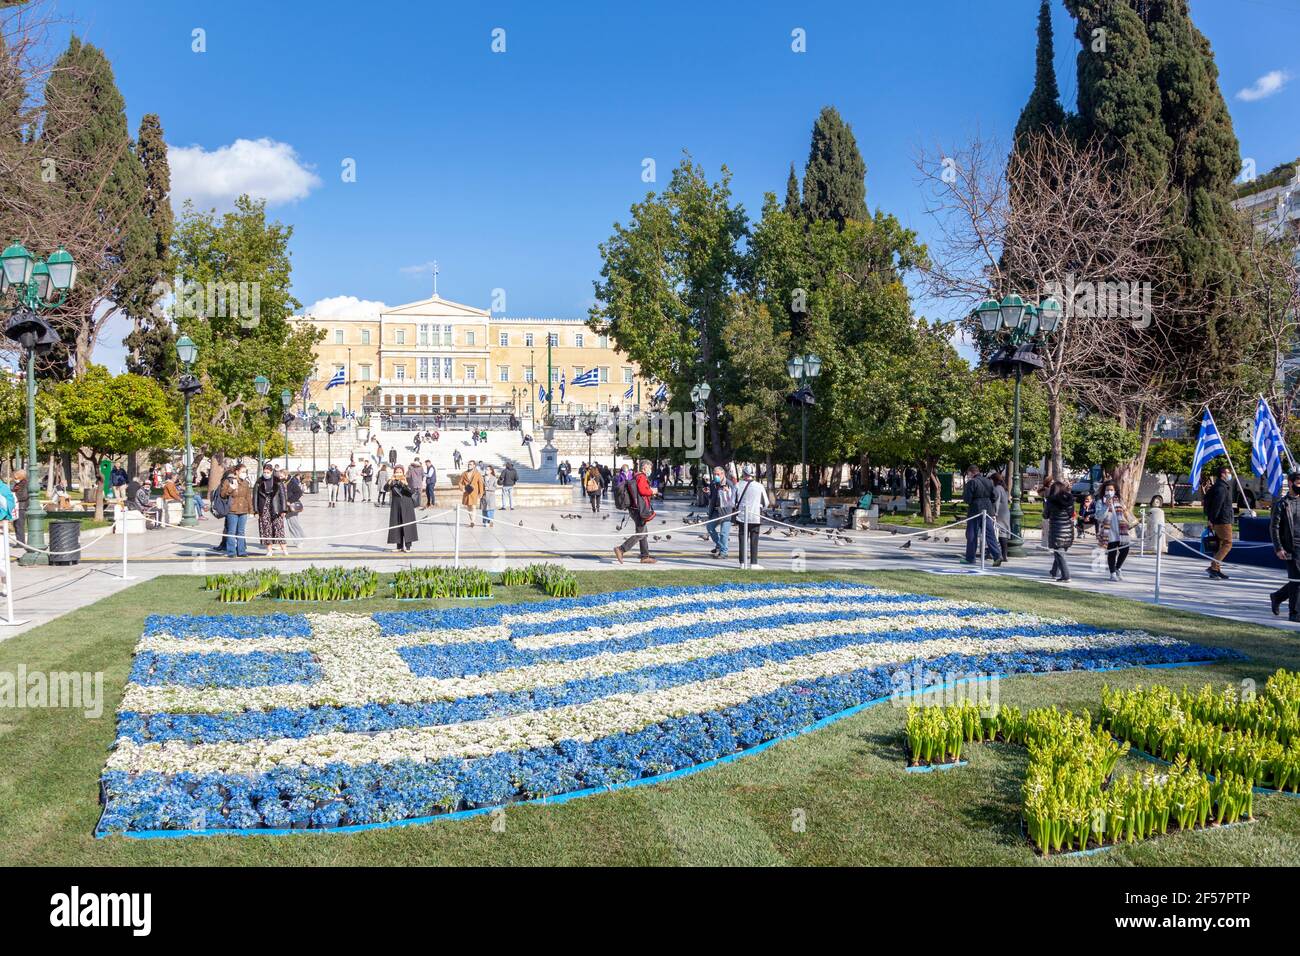 Una bandiera greca fatta di fiori blu e bianchi in Piazza Syntagma, Atene, durante le celebrazioni dei 200 anni del giorno dell'Indipendenza greca (1821-2021) Foto Stock